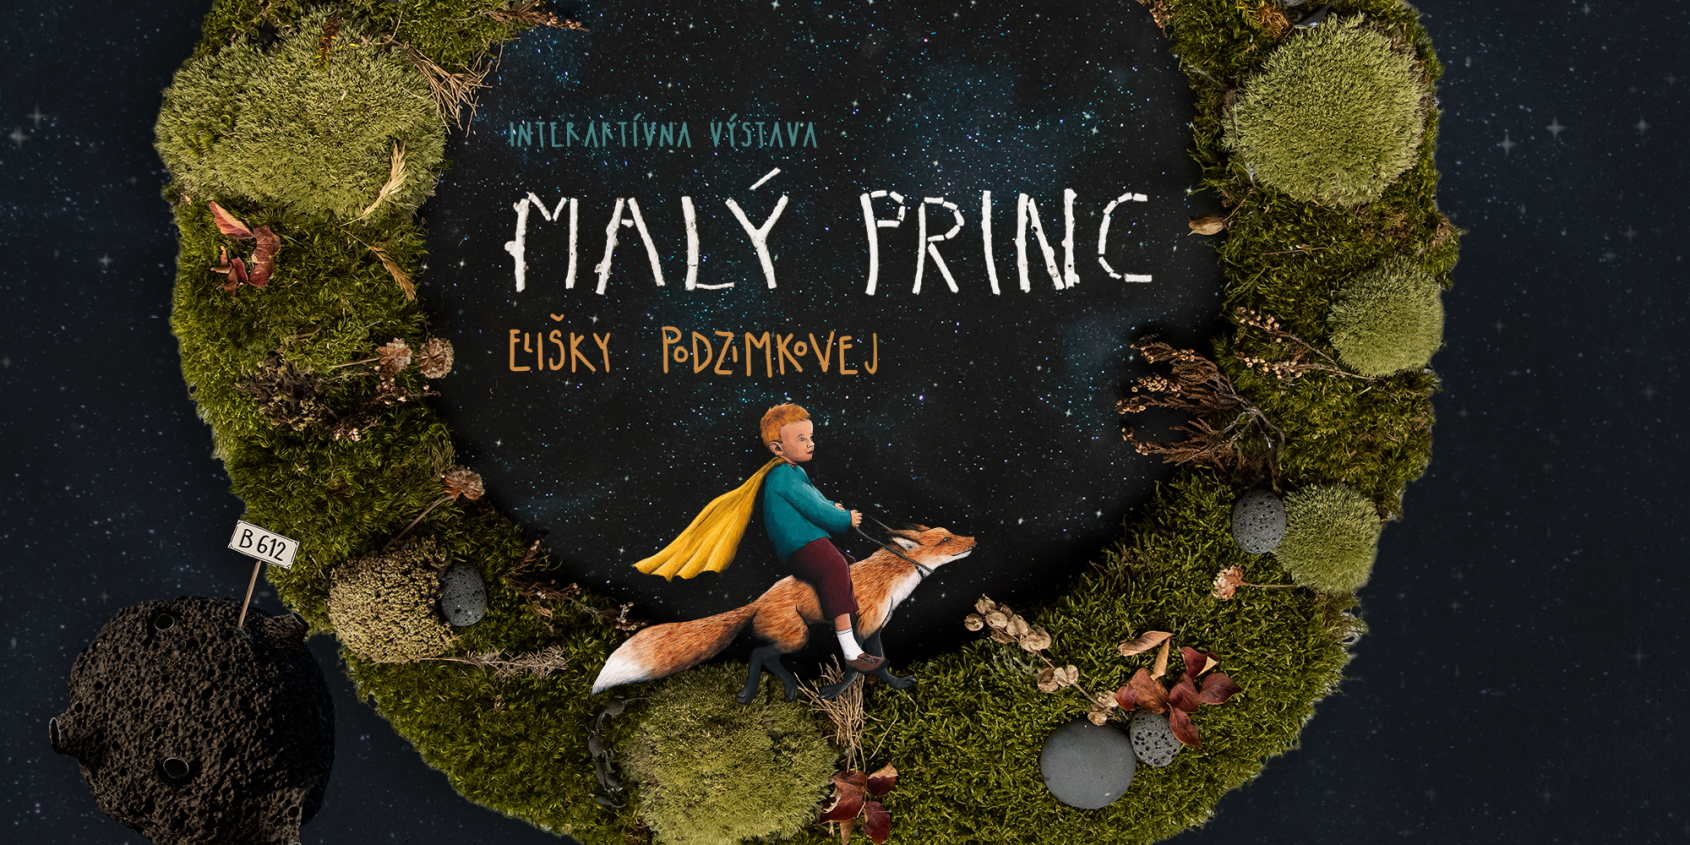 Exposition interactive « Le Petit Prince » d’Eliška Podzimková